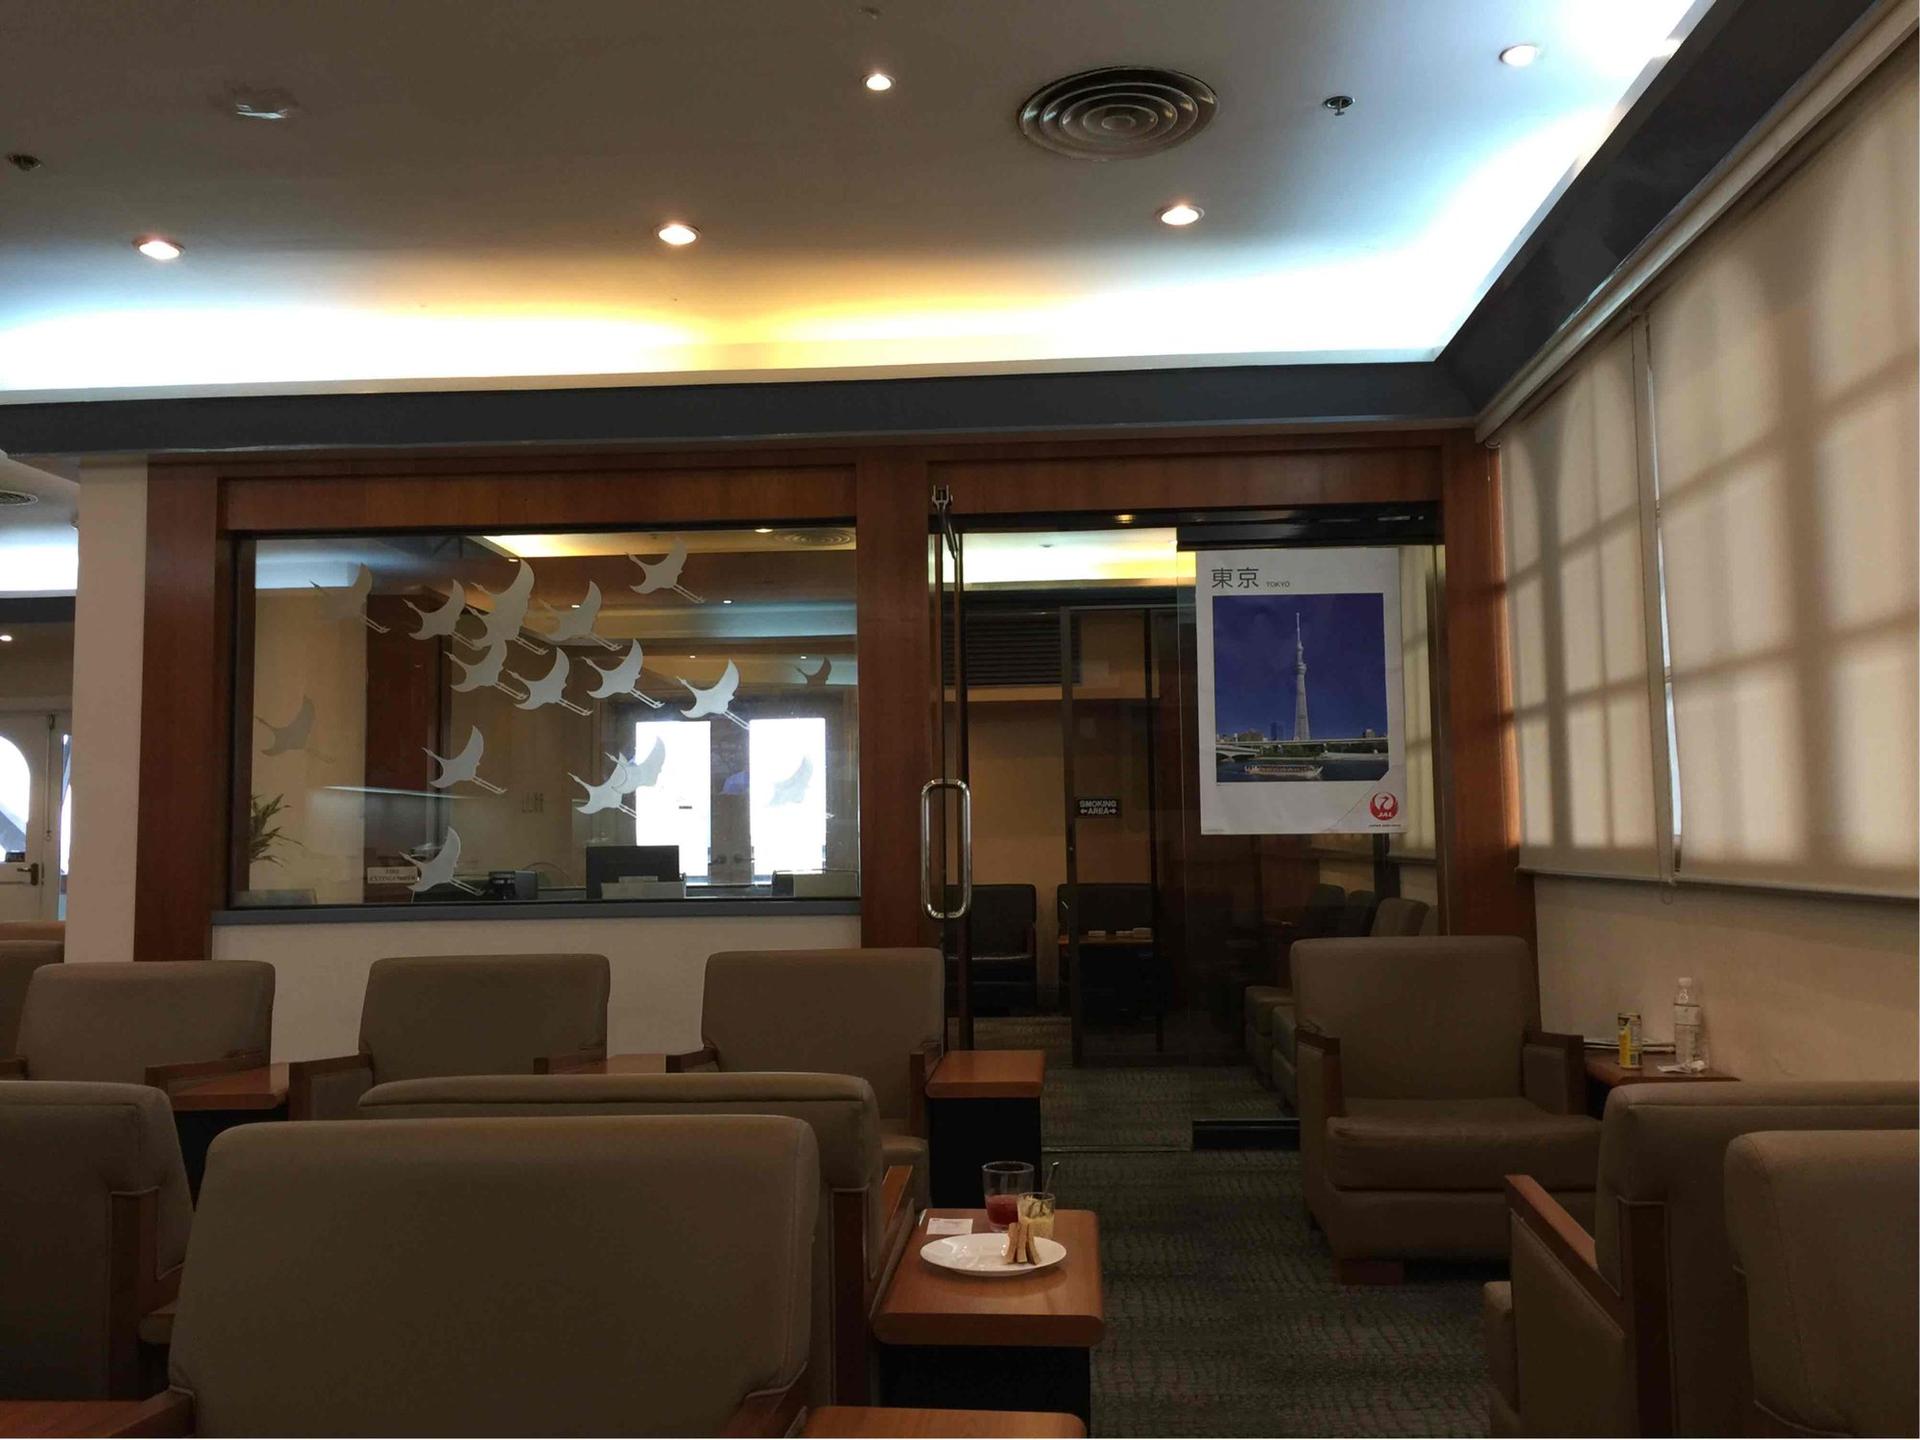 Japan Airlines JAL Sakura Lounge image 8 of 8